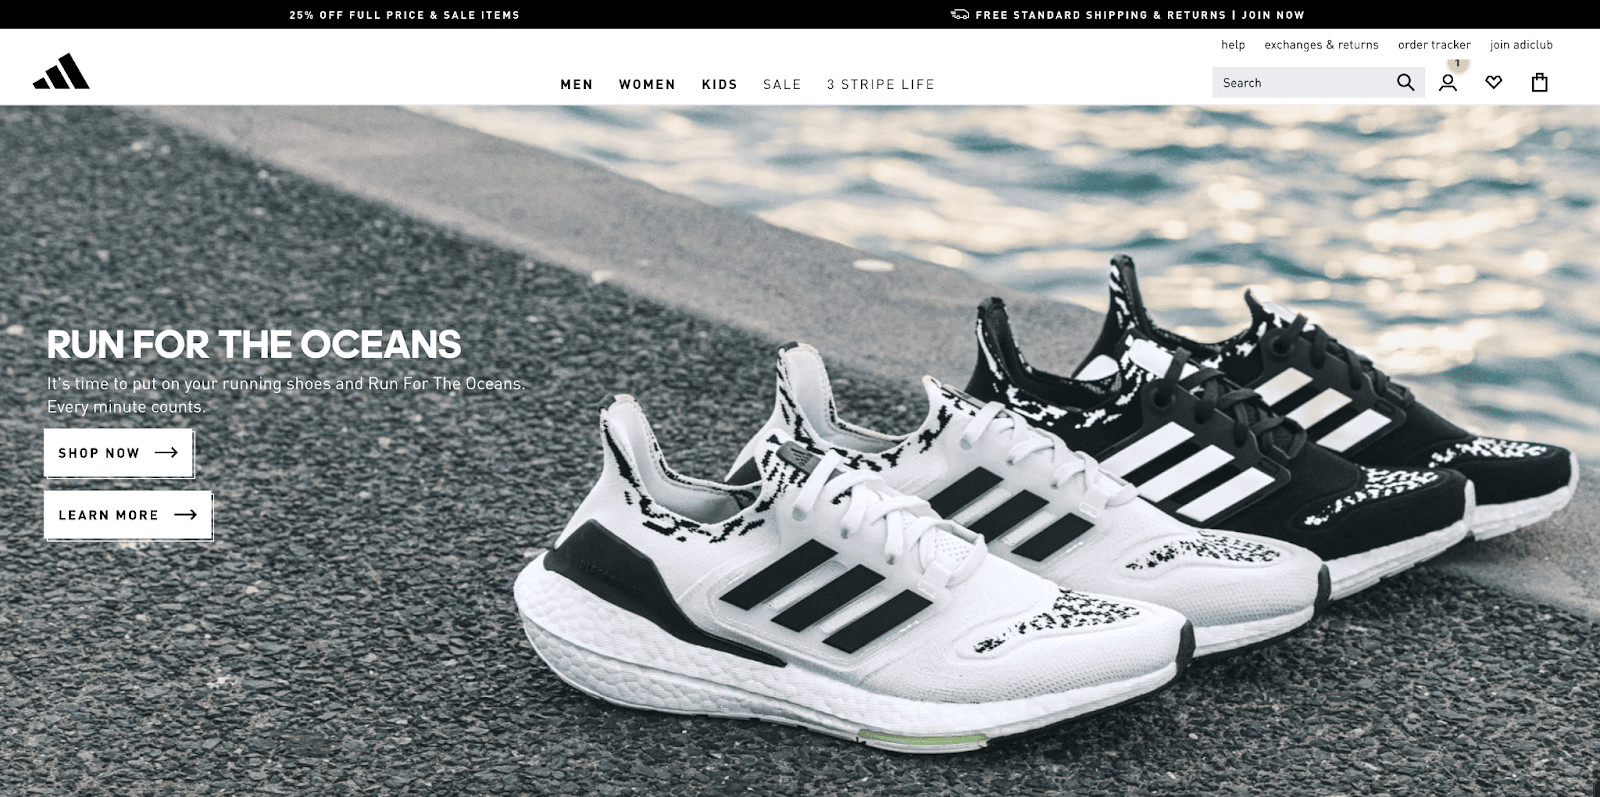 La homepage ufficiale di Adidas.